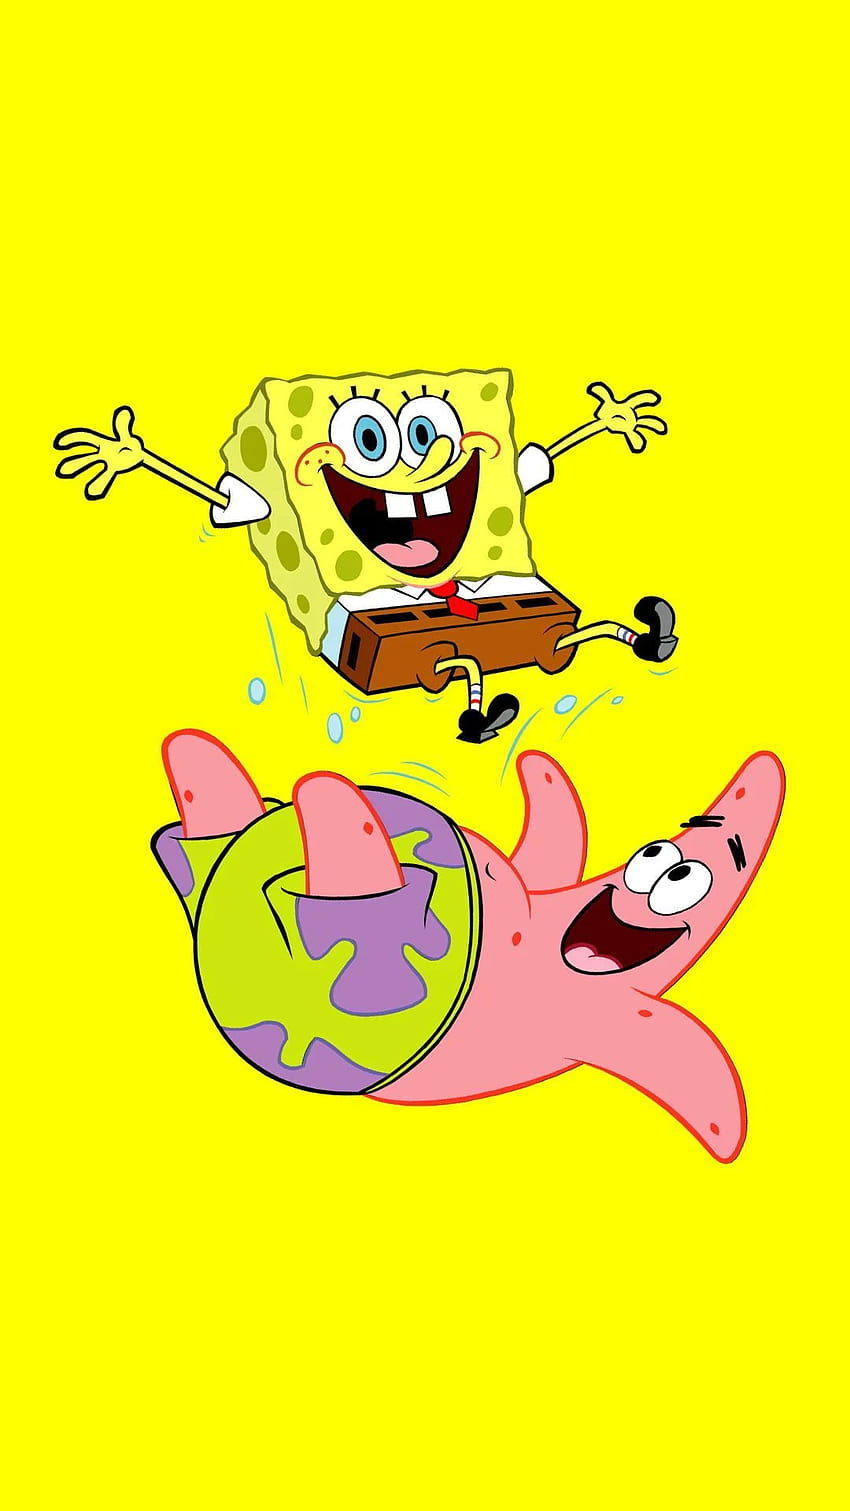 Aesthetic Spongebob Meme Wallpaper  Bob Esponja Meme HD Png Download  vhv